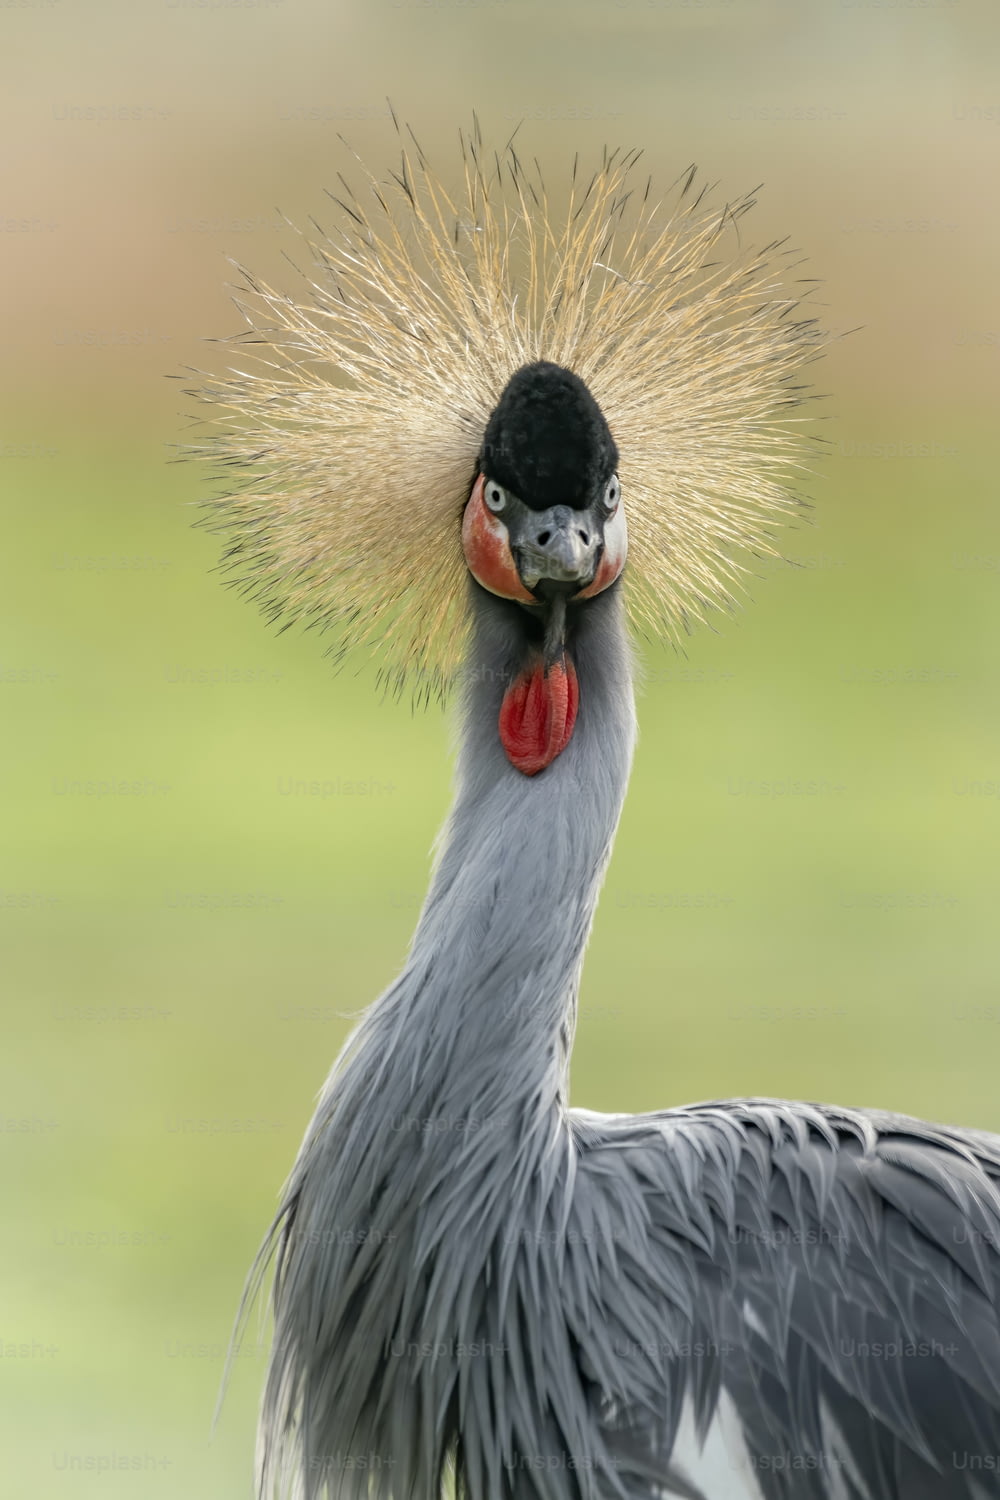 Retrato de um belo guindaste coroado preto, ou Grou de crista preta (Balearica pavonina) perfil de close-up. Pássaro nacional da Nigéria. Fundo verde.